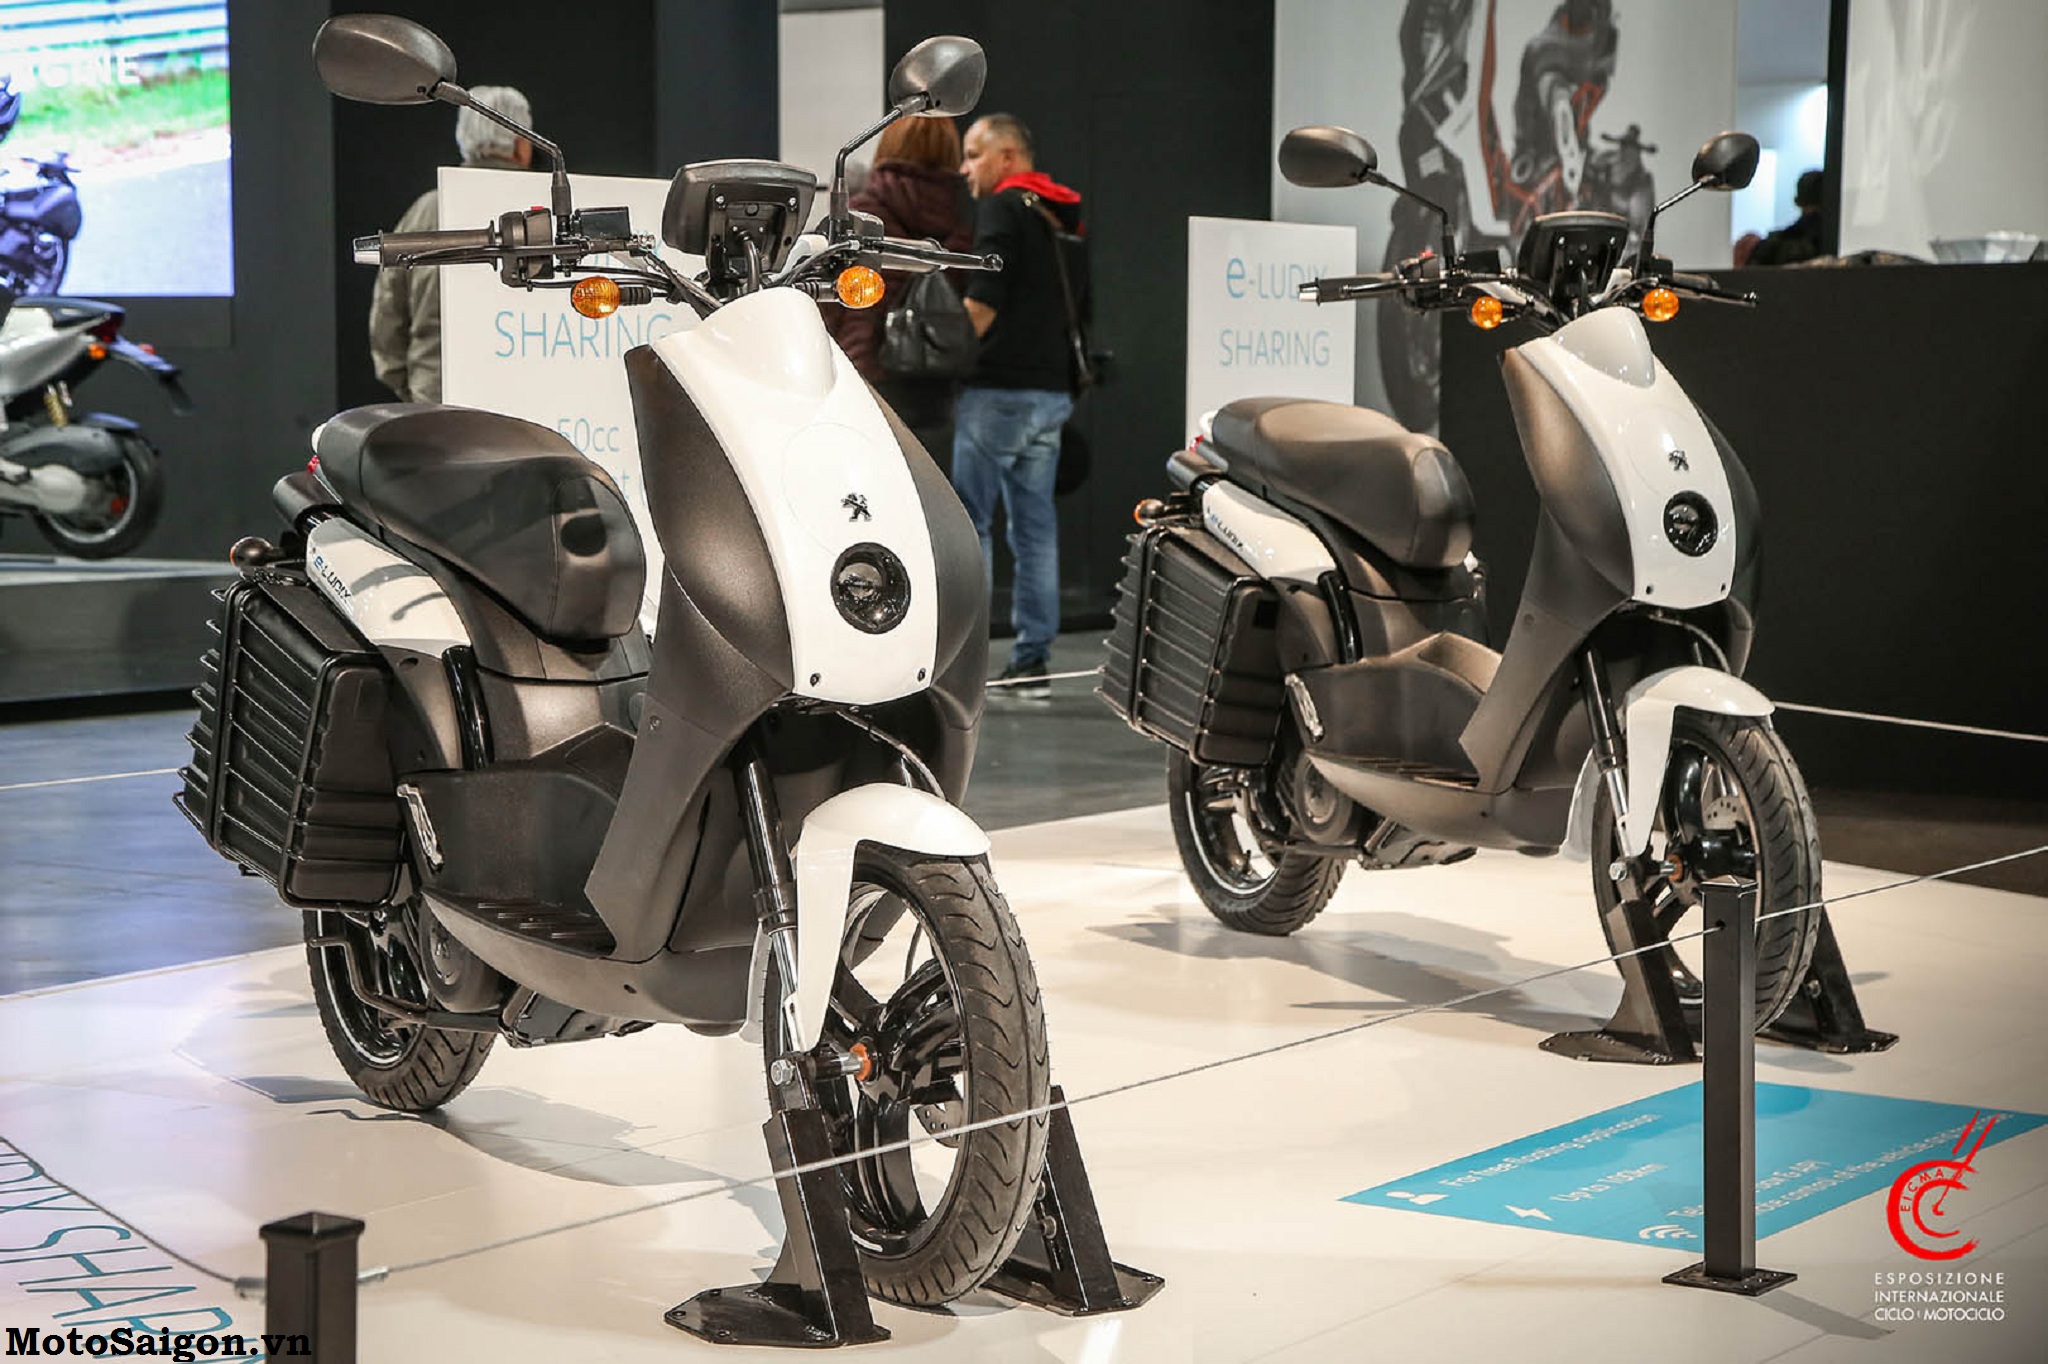 Các Mẫu Xe Mới 2020 Của Peugeot Tại Eicma 2019 - Motosaigon